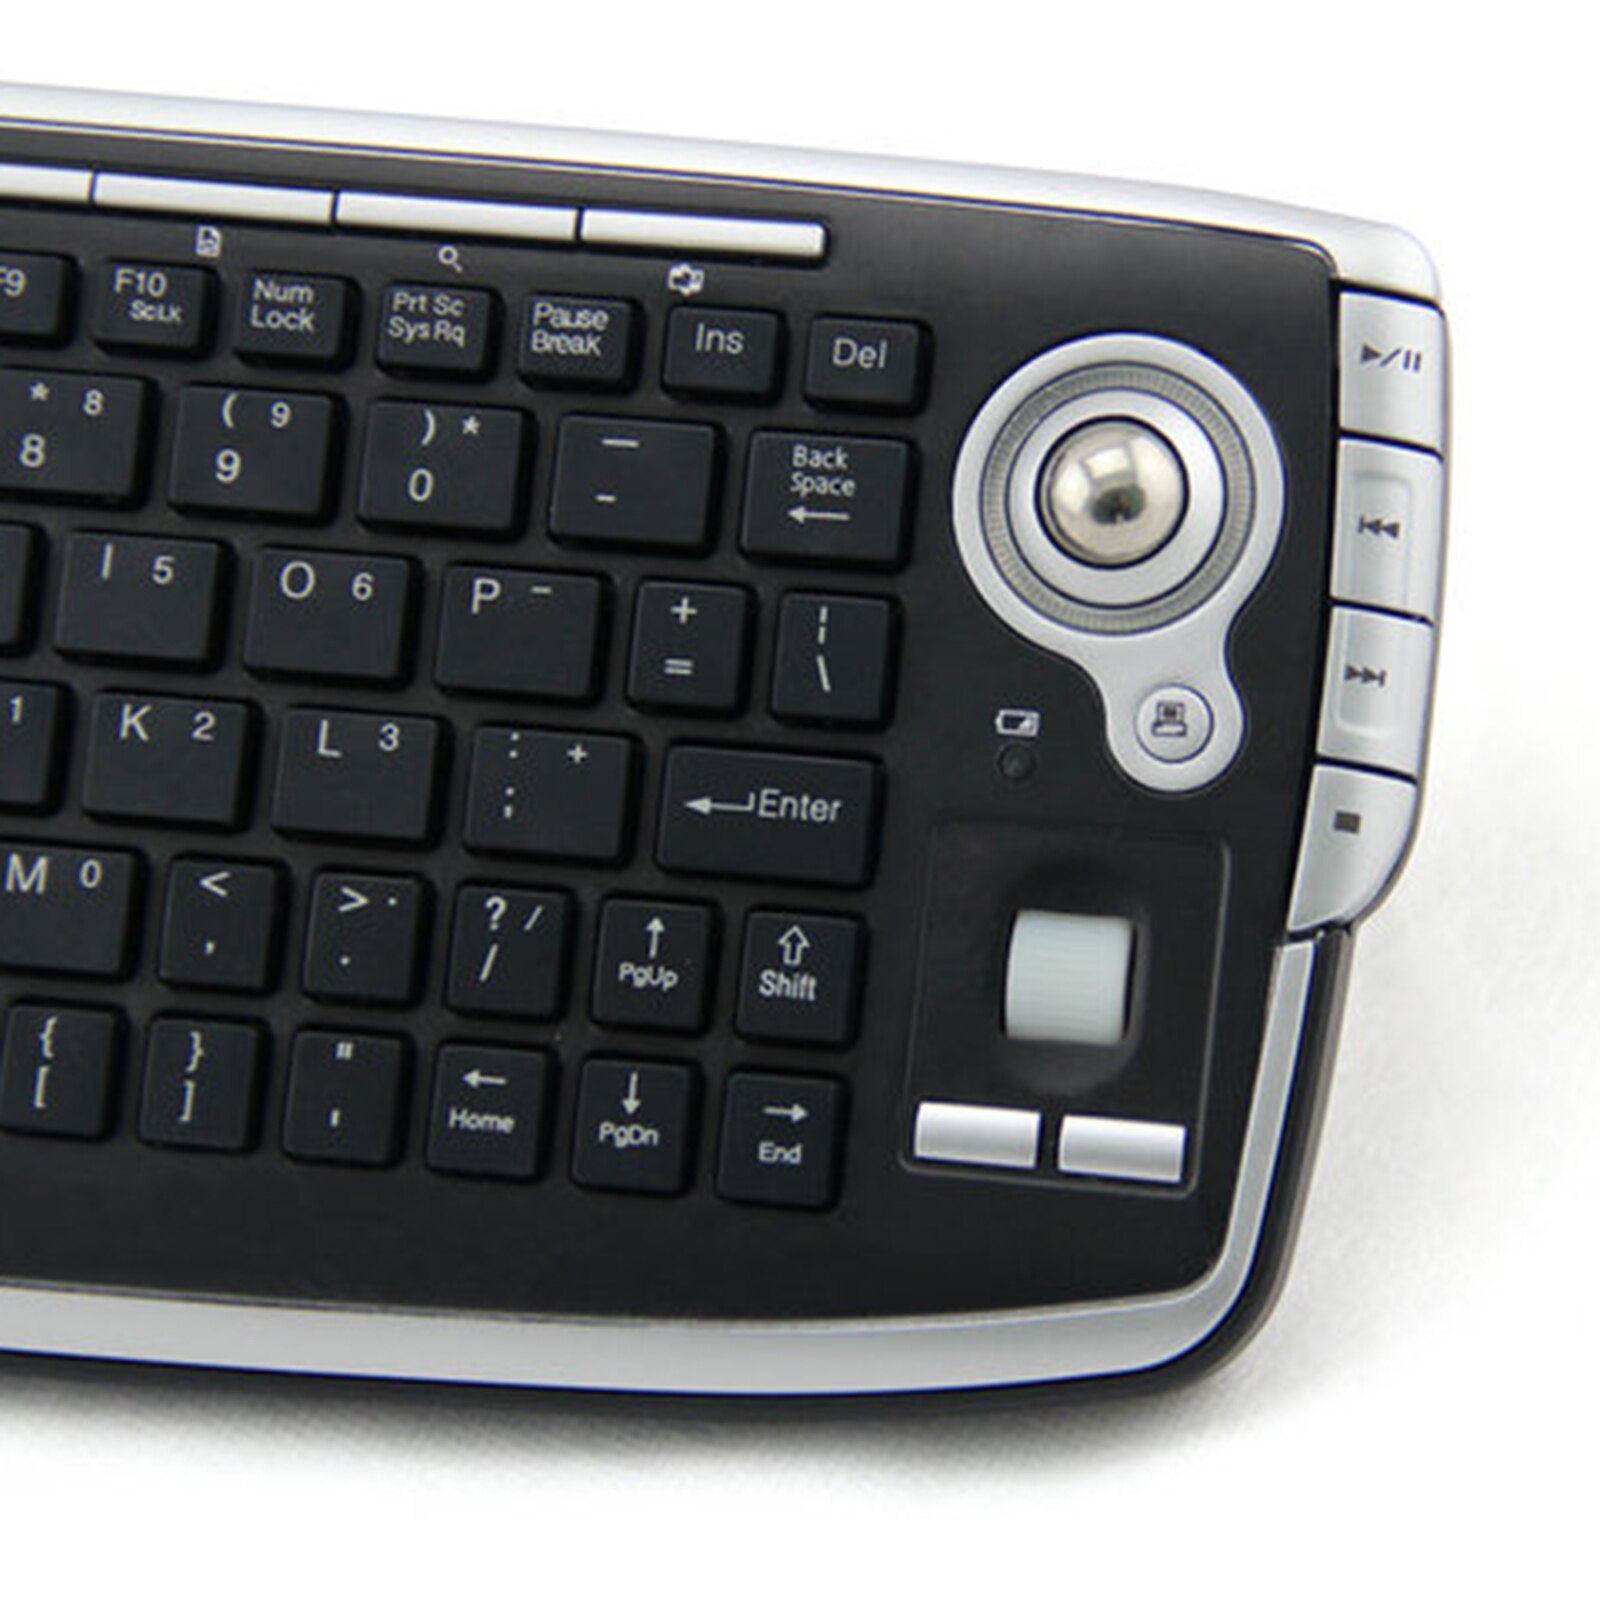 btc s320 2.4ghz portable wireless keyboard mini